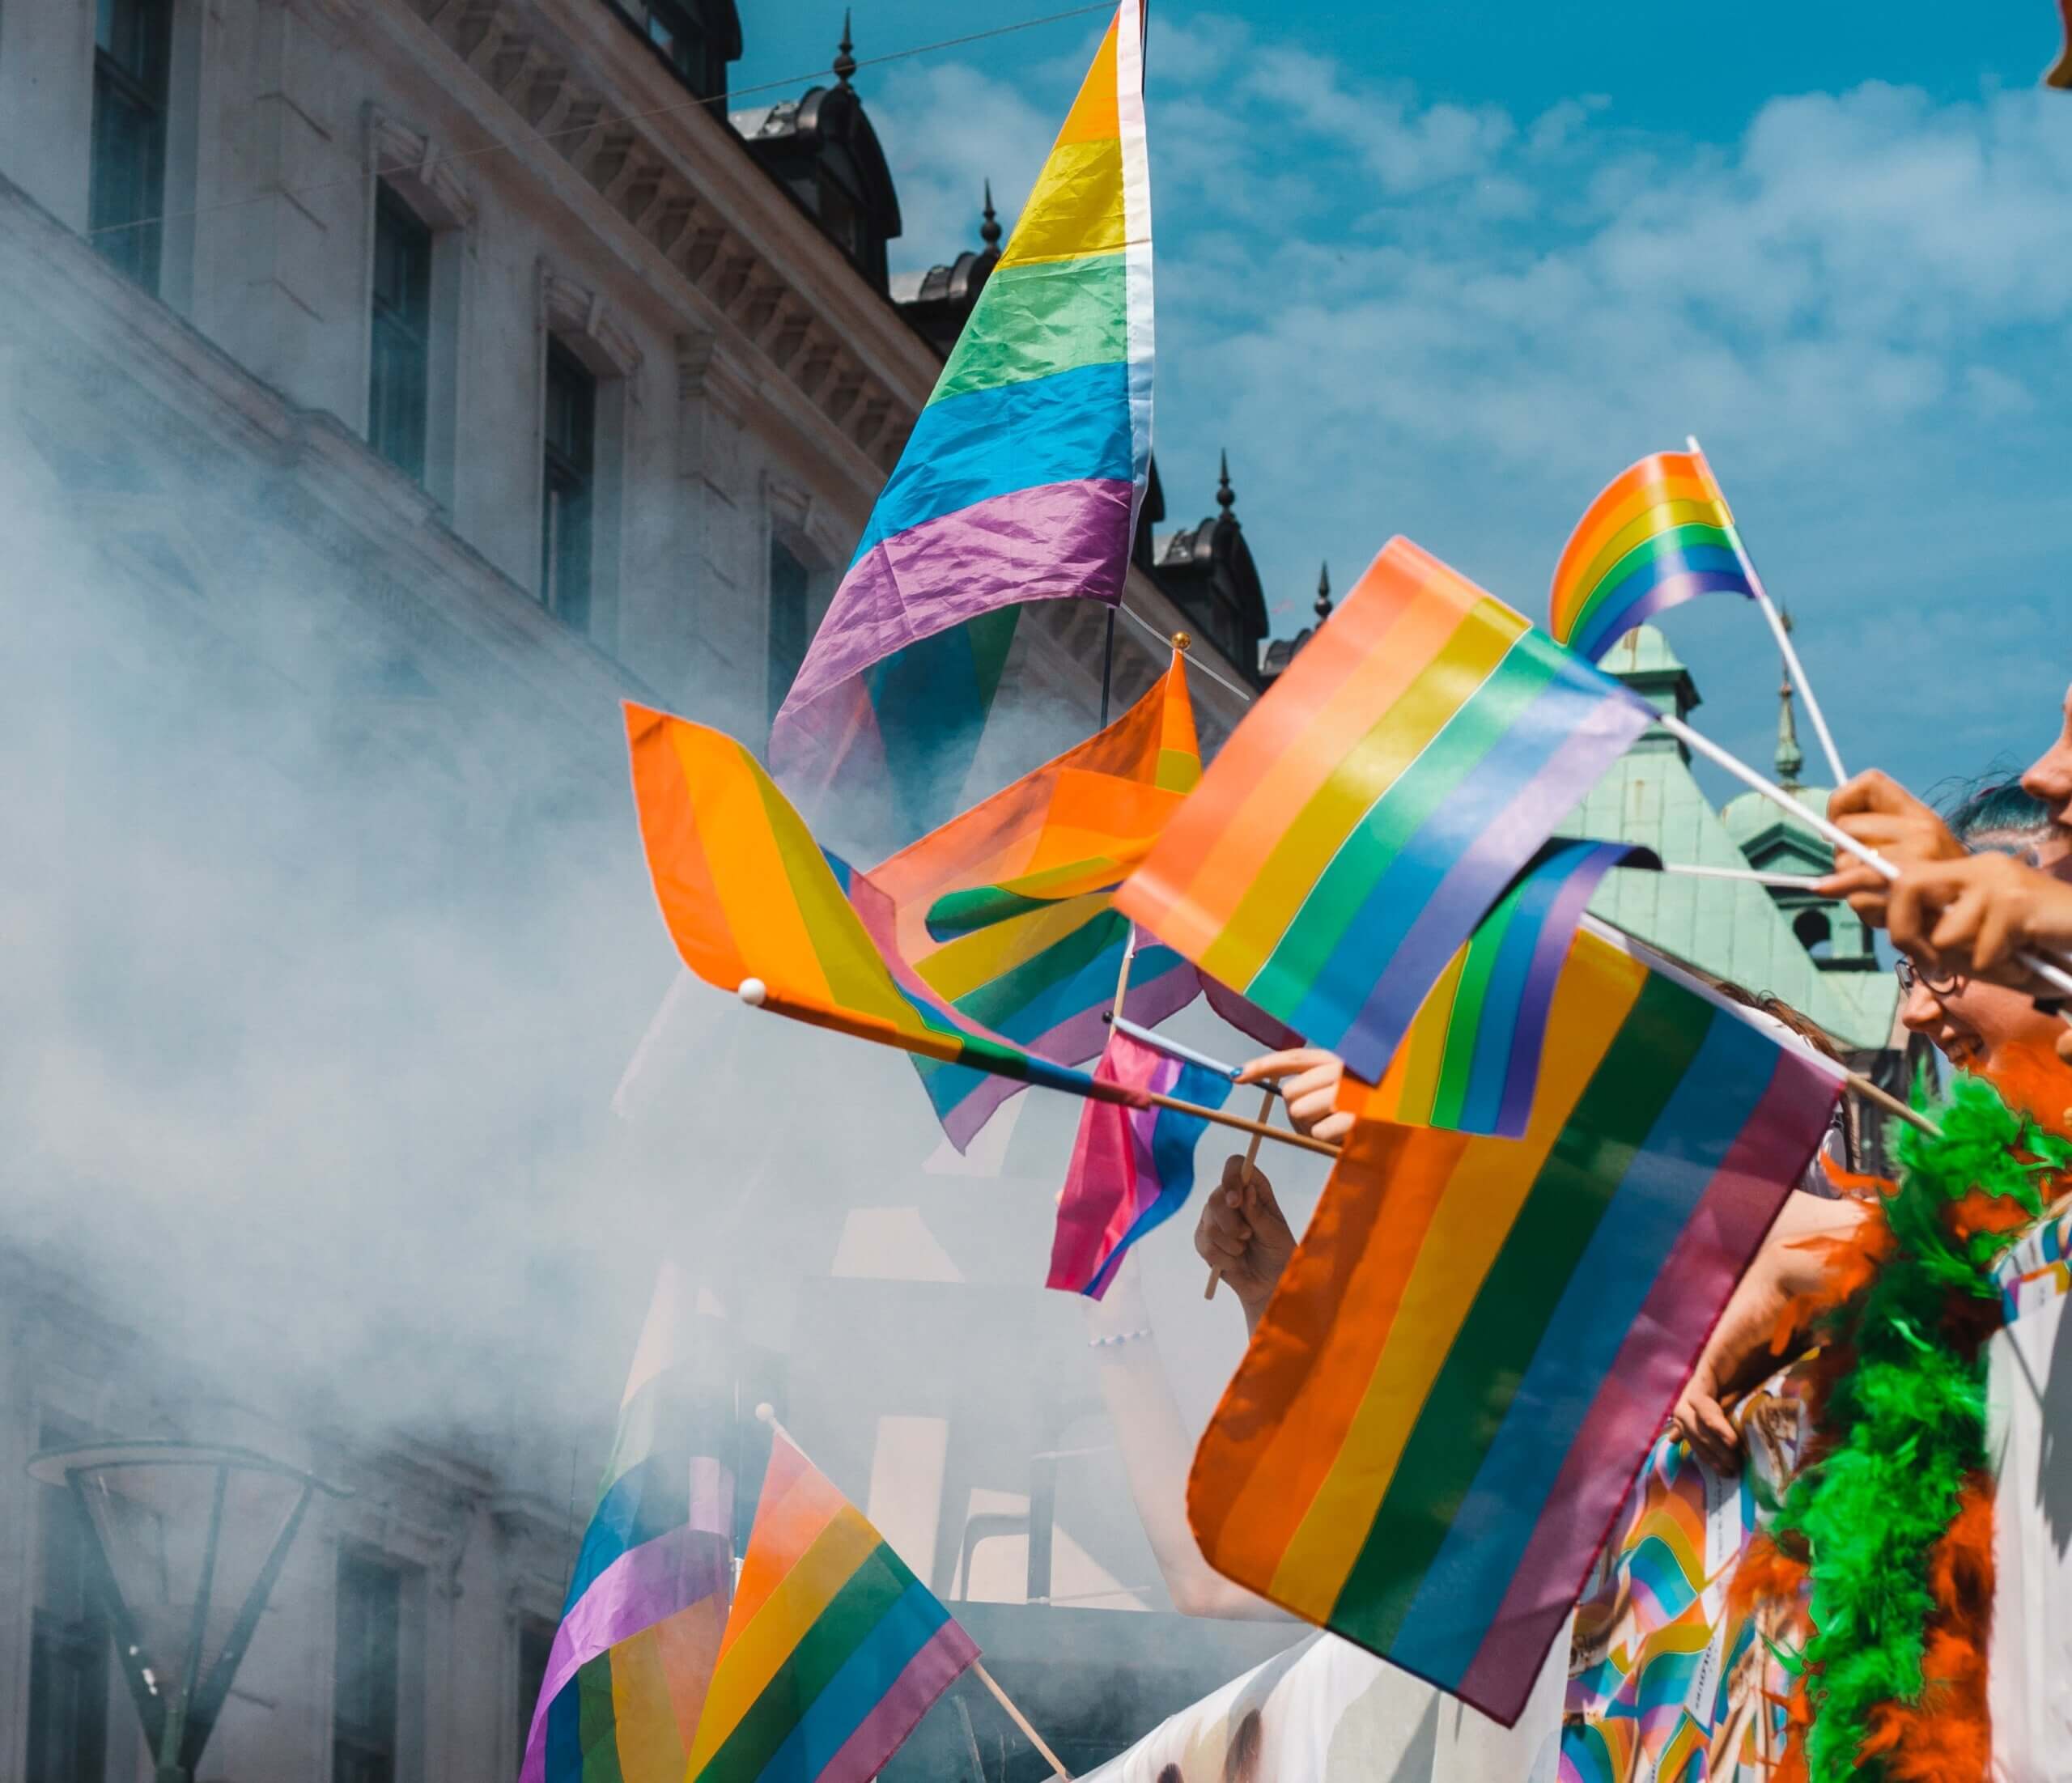 Drapeaux LGBT lors d'une Pride